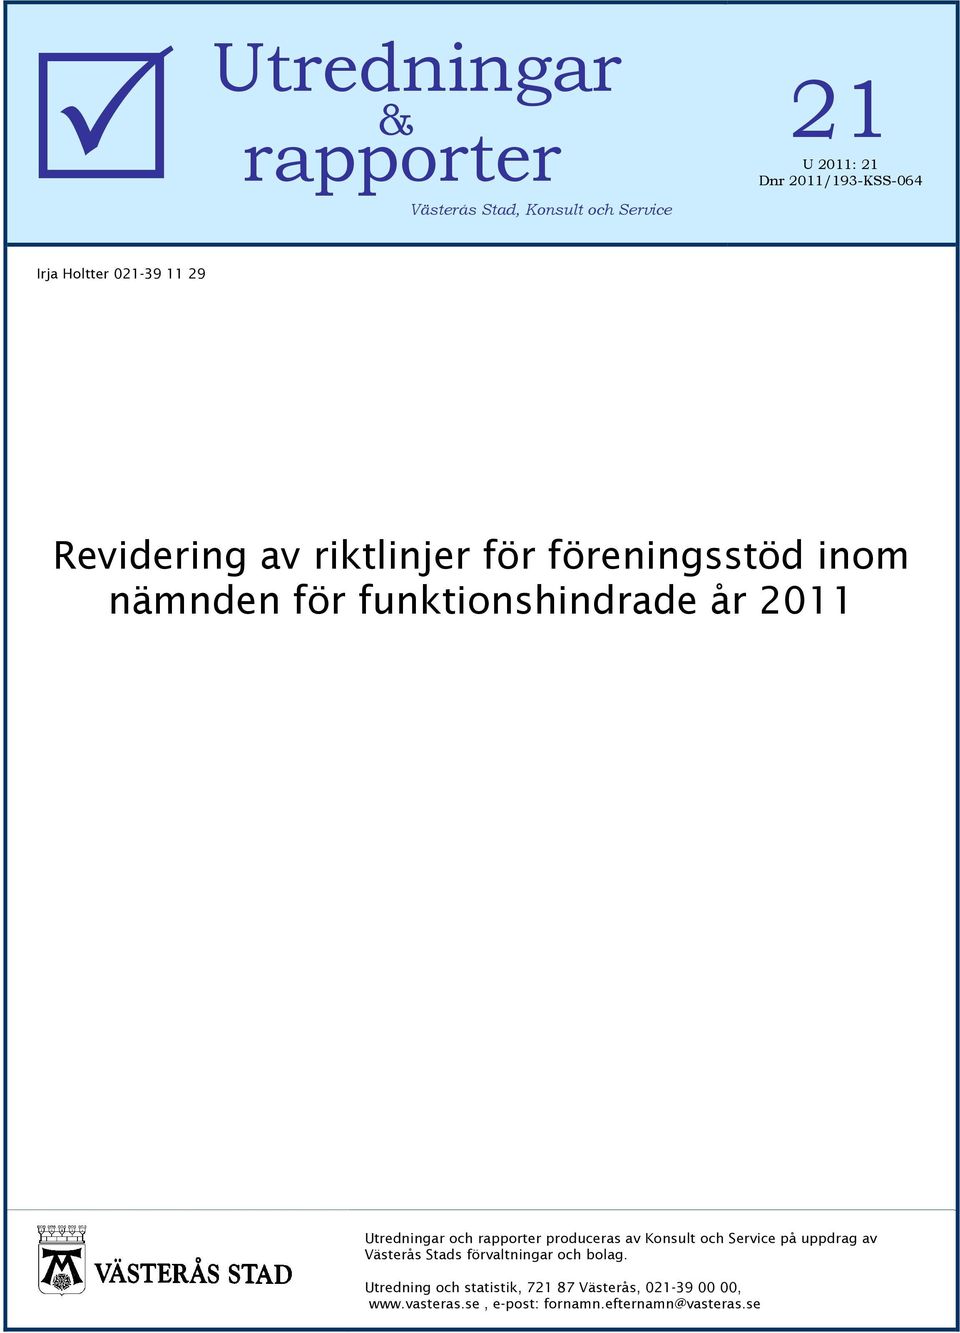 Utredningar och rapporter produceras av Konsult och Service på uppdrag av Västerås Stads förvaltningar och